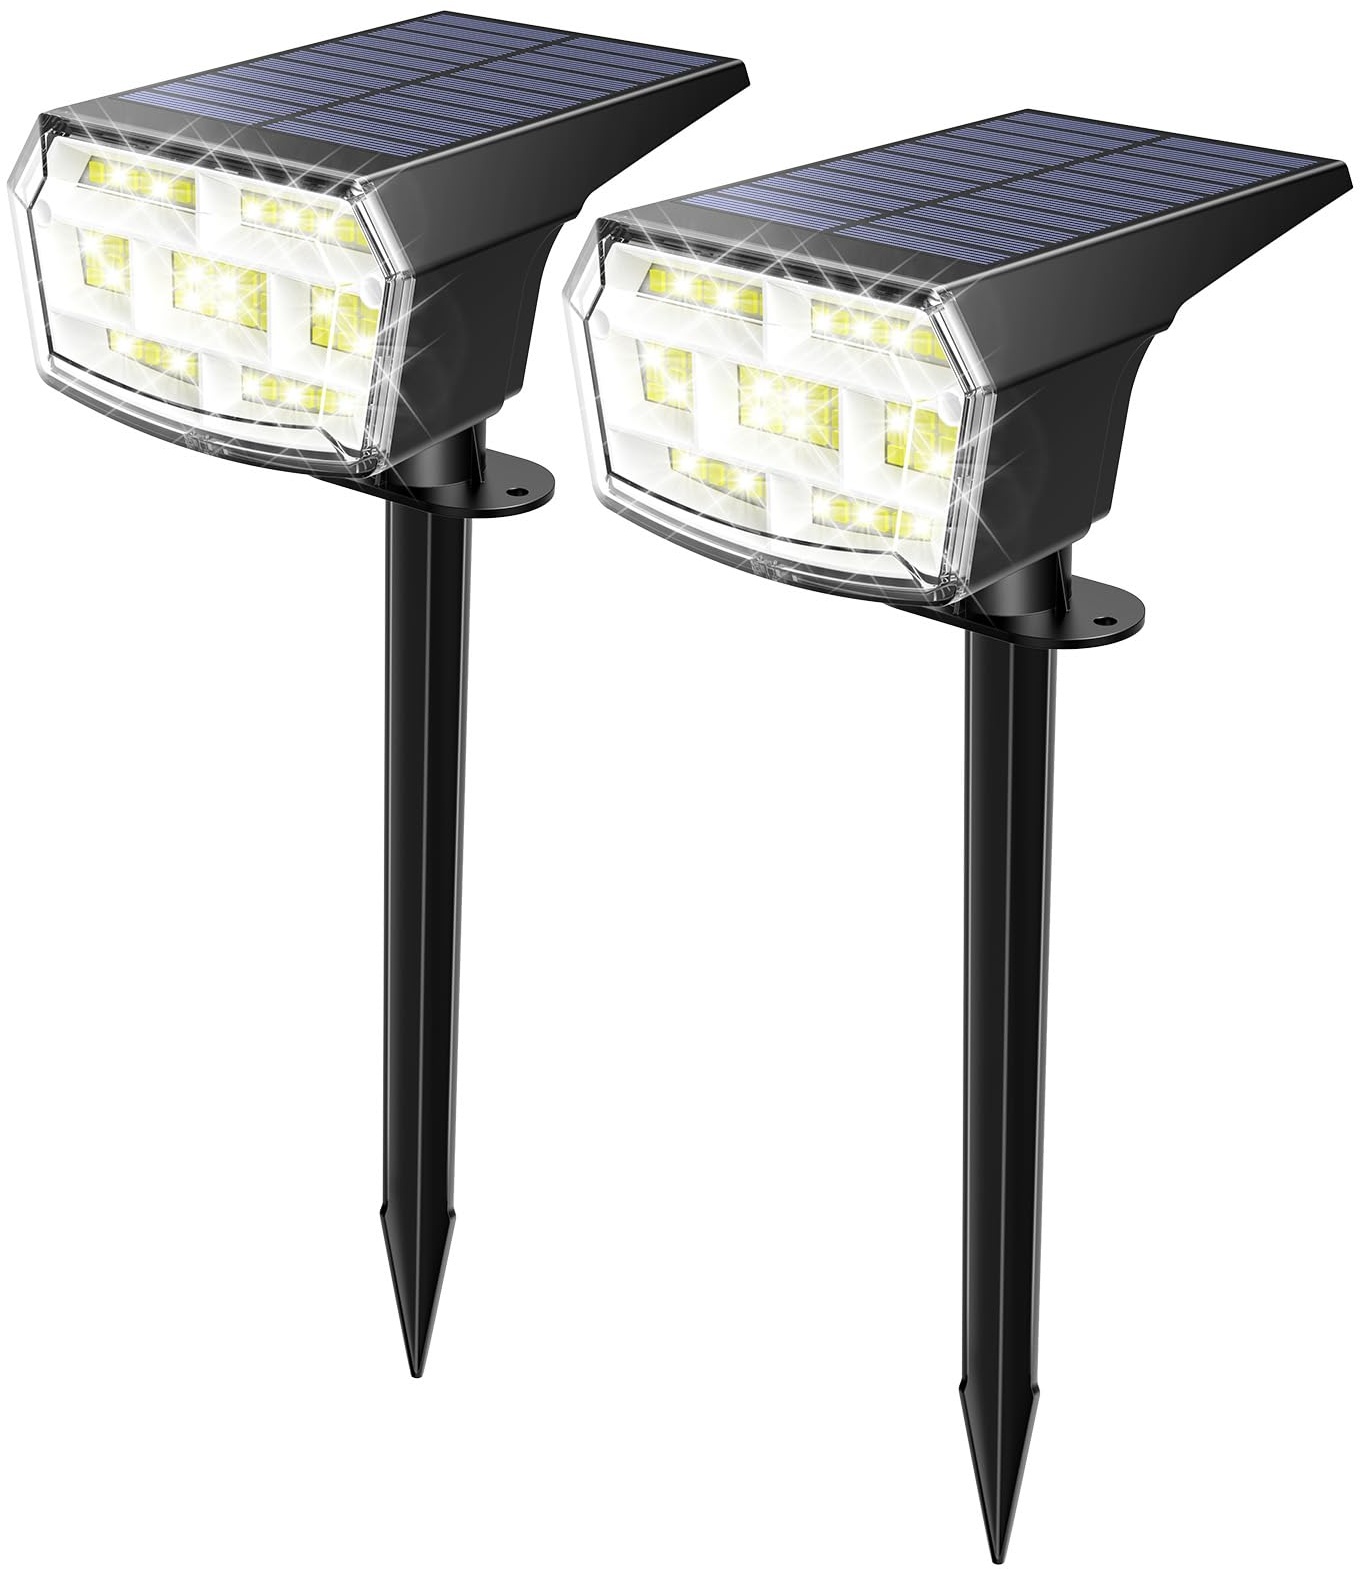 iFalarila Solarlampen für Außen - 2er Set LED Solar Strahler | 59 LED Perlen, Flexibles 90-Grad-Solarpanel, 3 Helligkeitsstufen, Vielseitige Garten- und Wandinstallation, Solarleuchten für Außendeko